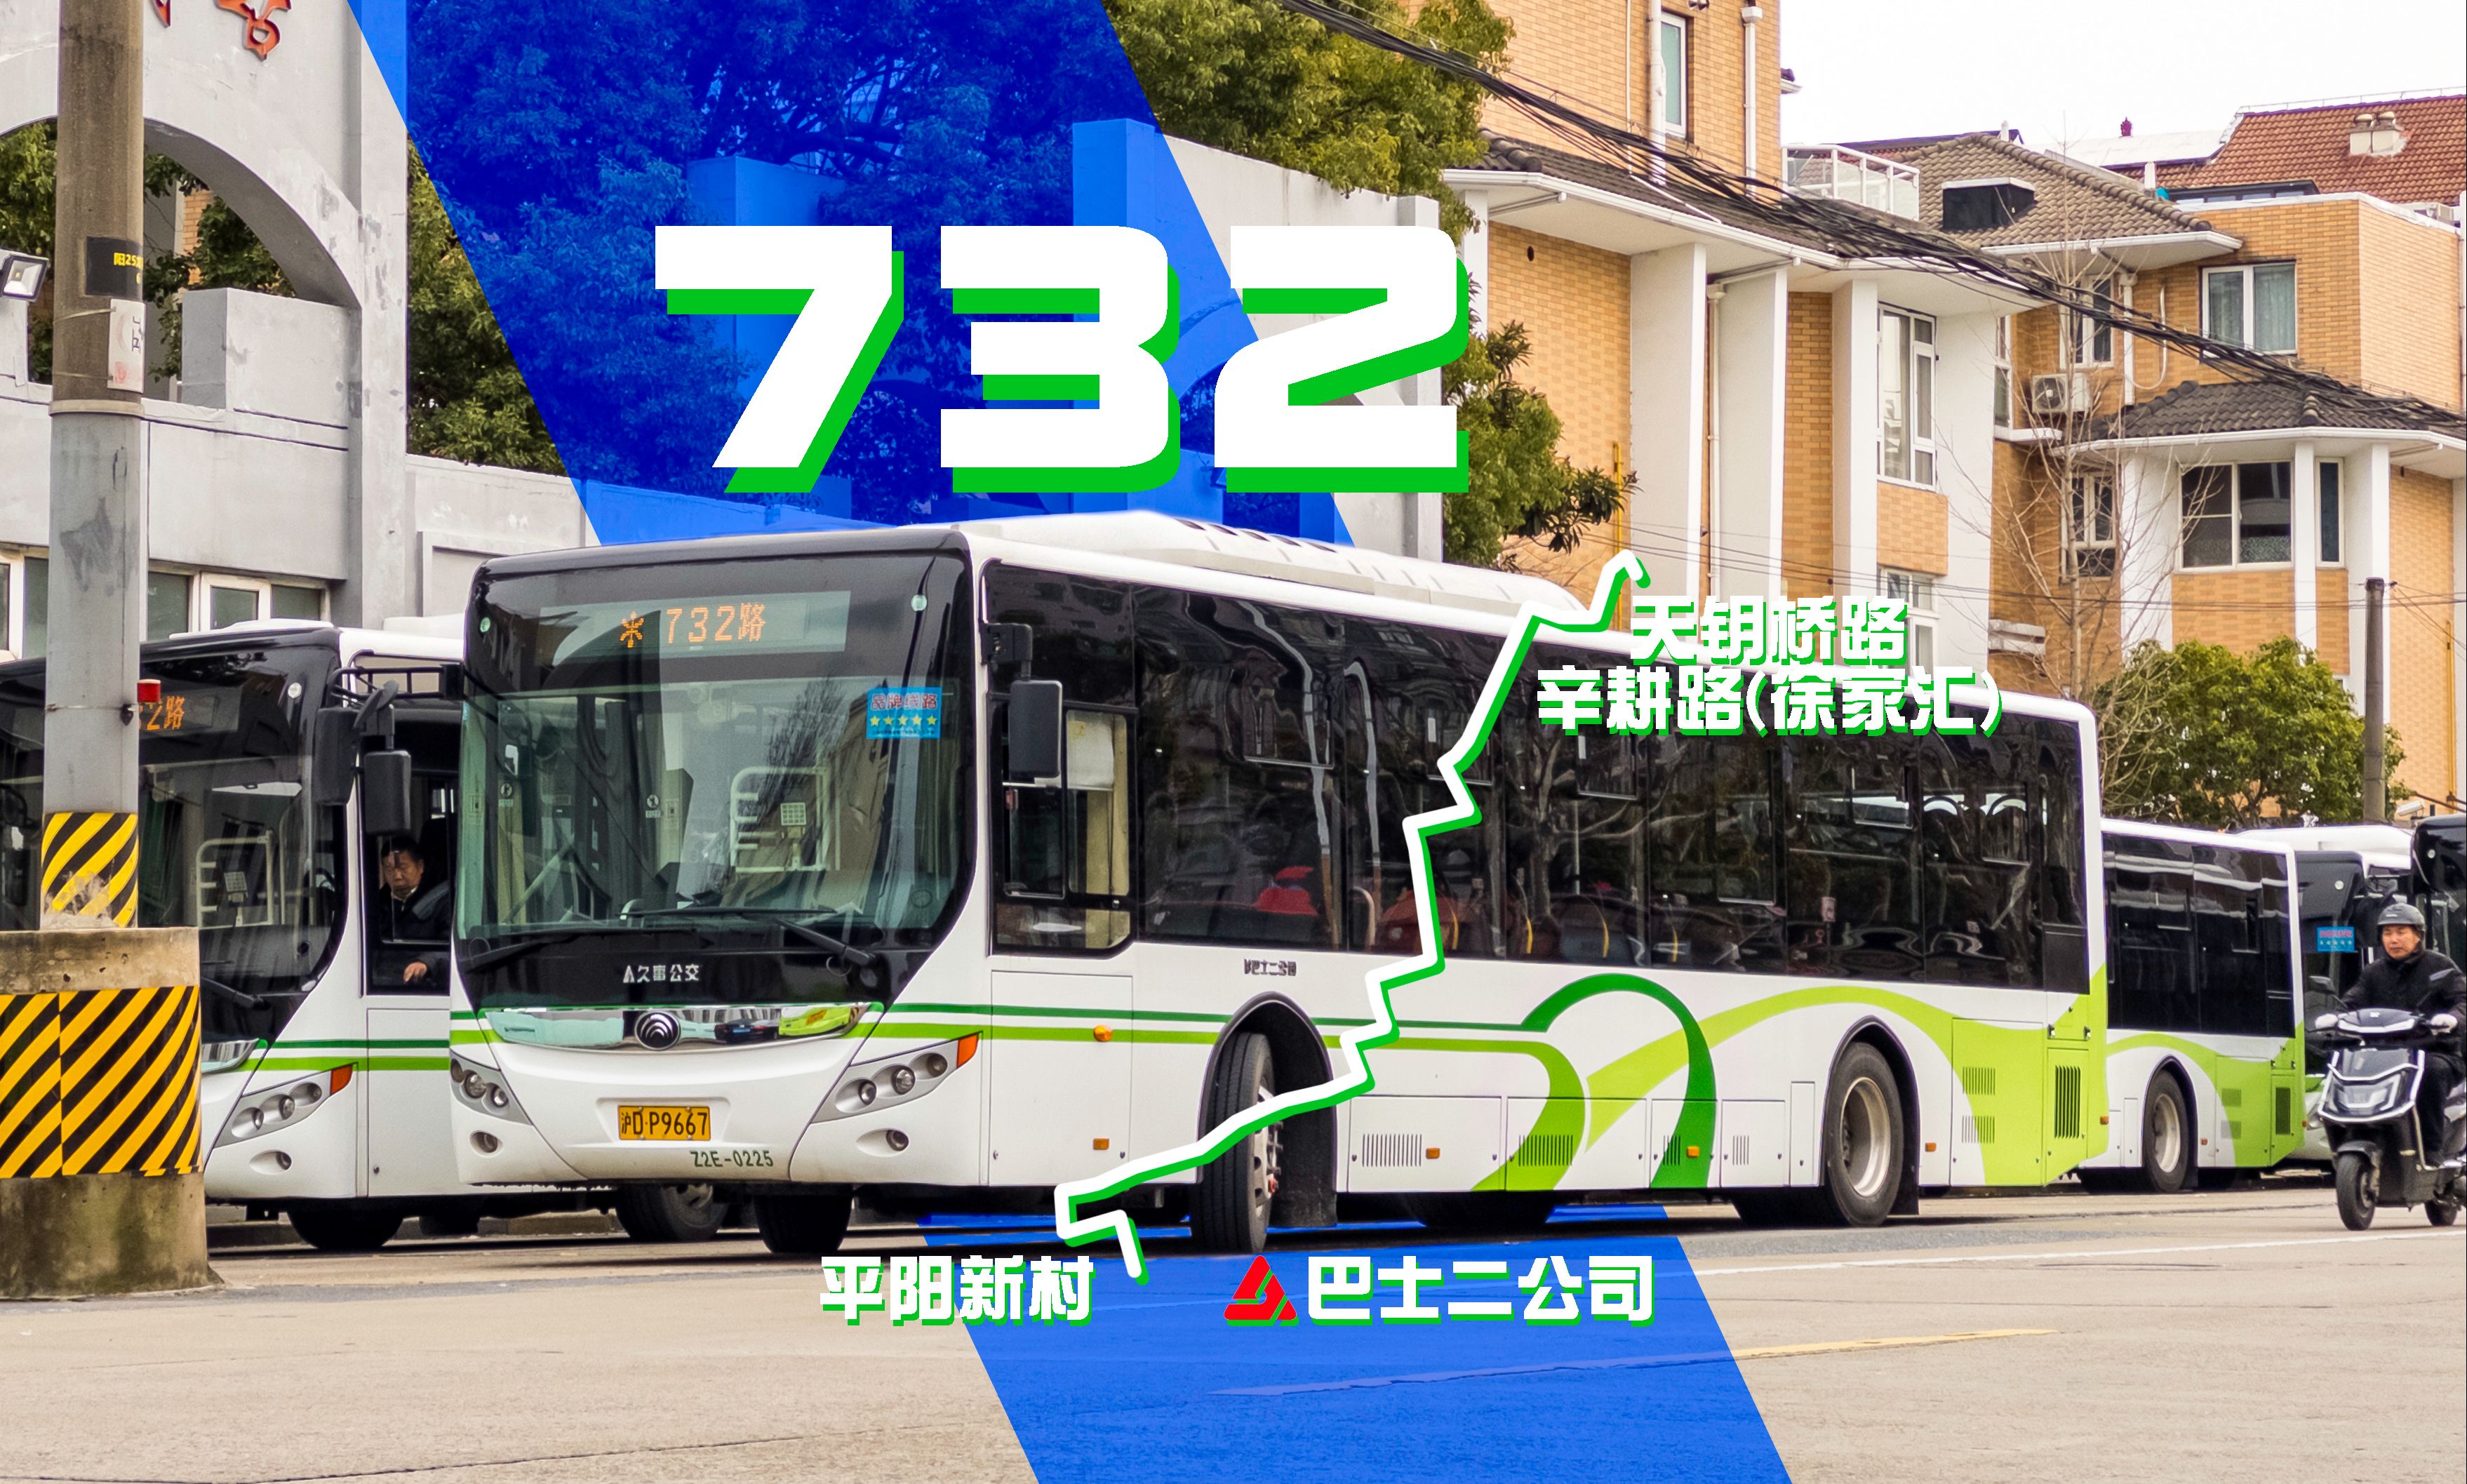 732路公交车路线图图片